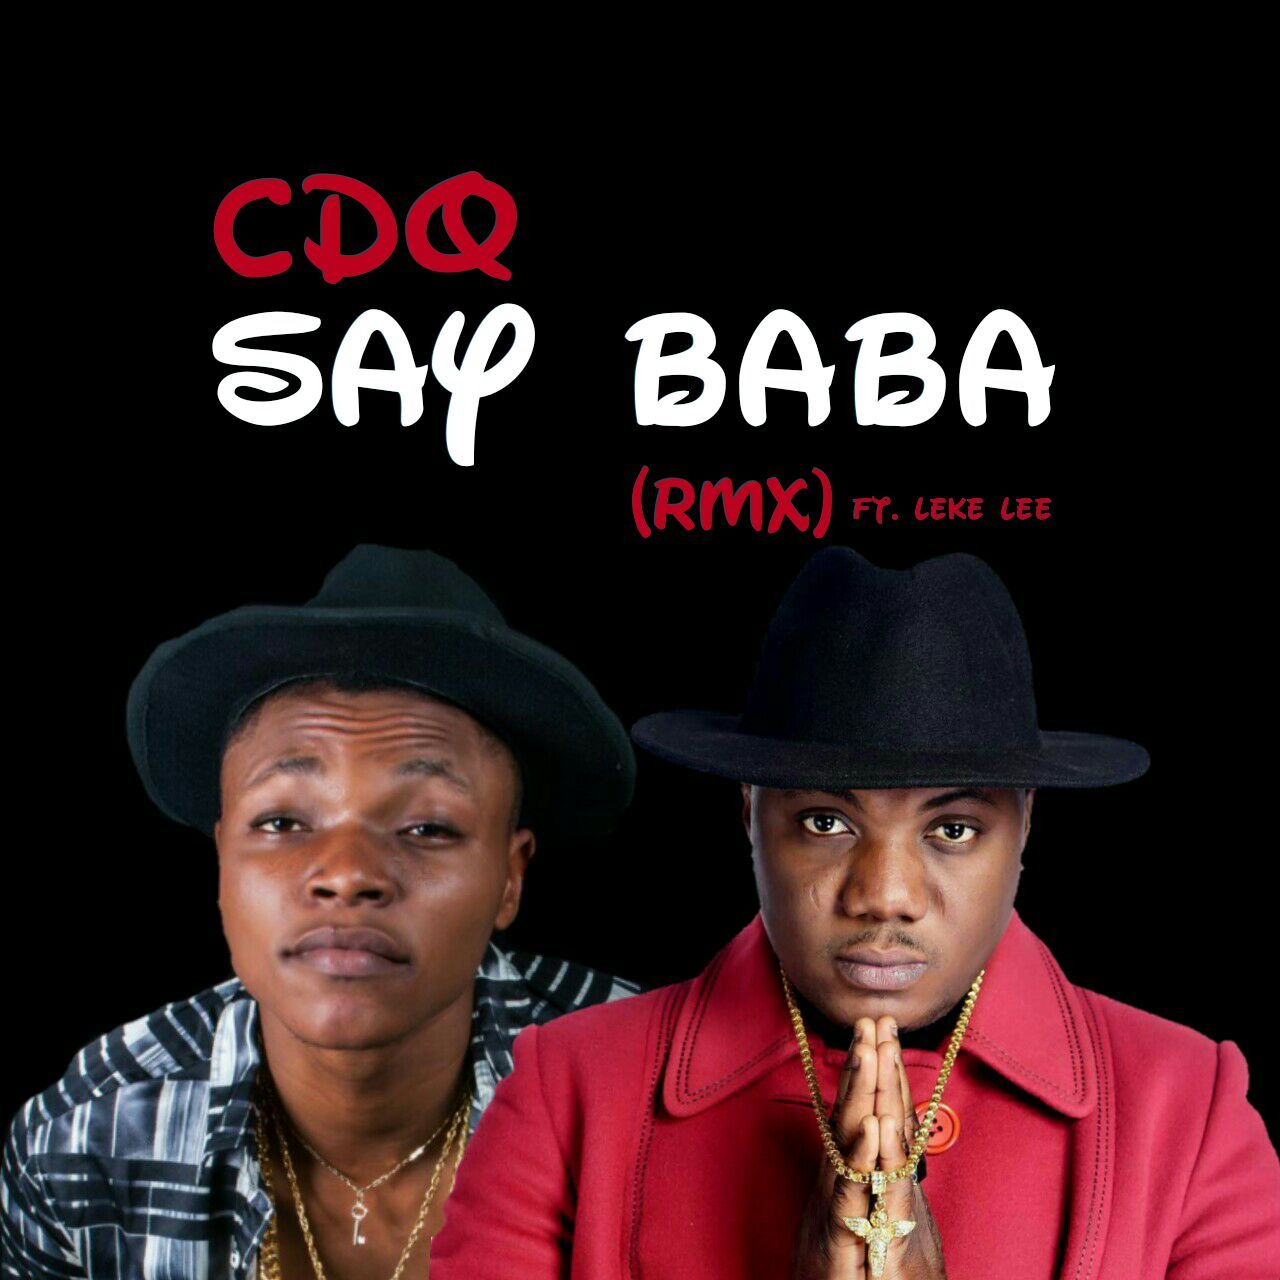 CDQ Ft. Leke Lee – “Say Baba” (Remix)